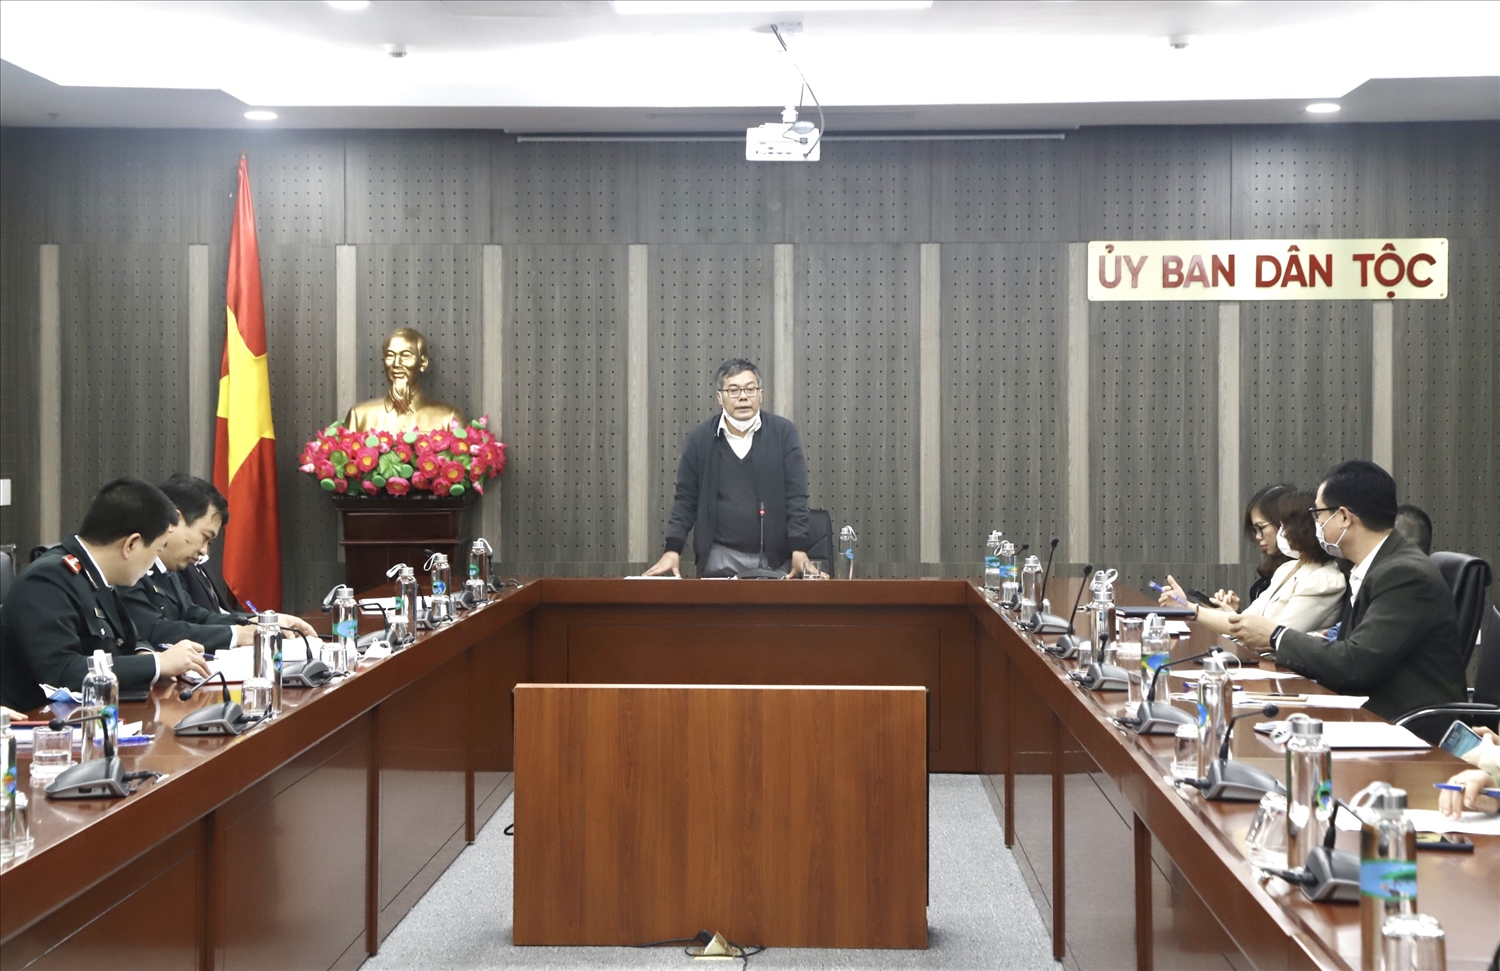  Ông Võ Văn Bảy, Chánh Thanh tra Ủy ban Dân tộc phát biểu tại buổi công bố Quyết định số 18 ngày 24/1/2022 của Ủy ban Dân tộc 